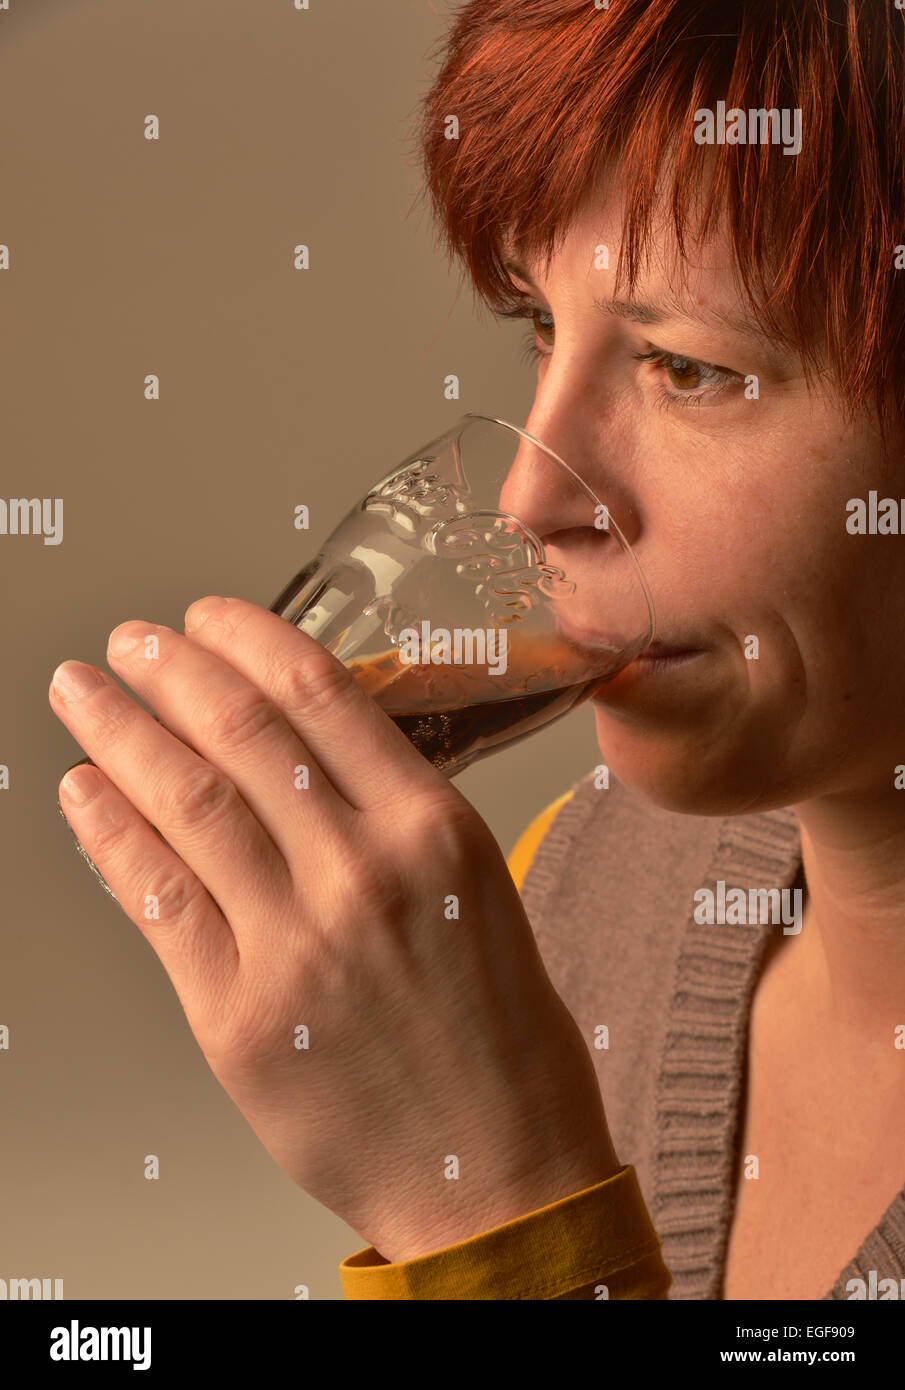 Foto di simbolo circa zucchero in alimenti e bevande: Donna bere Coca-Cola. Foto: Klaus Rose Foto Stock